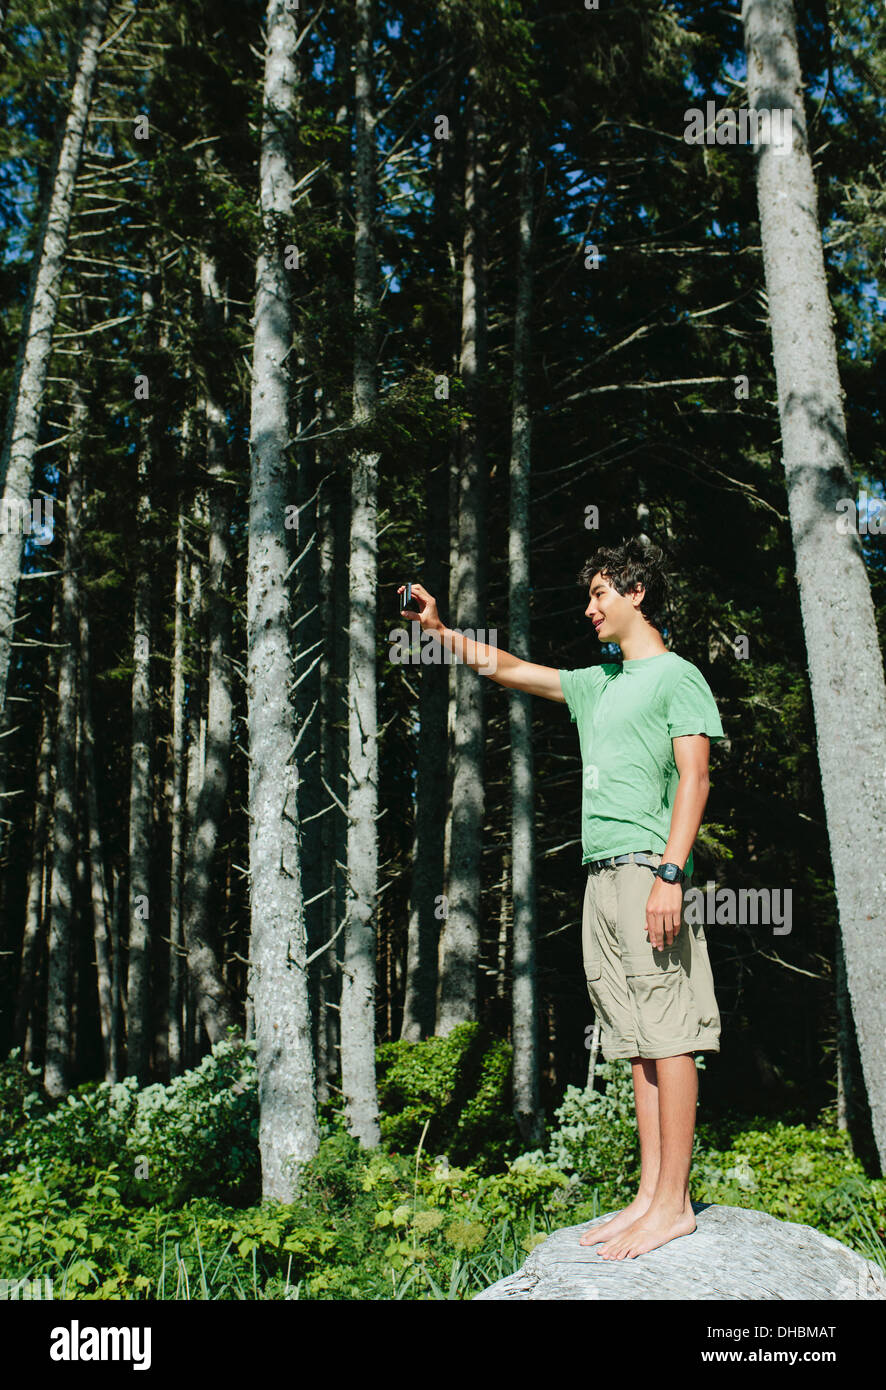 Ein kleiner Junge steht im Wald eine Smartphone ein selfy oder ein Foto im Olympic Nationalpark zu halten. Stockfoto